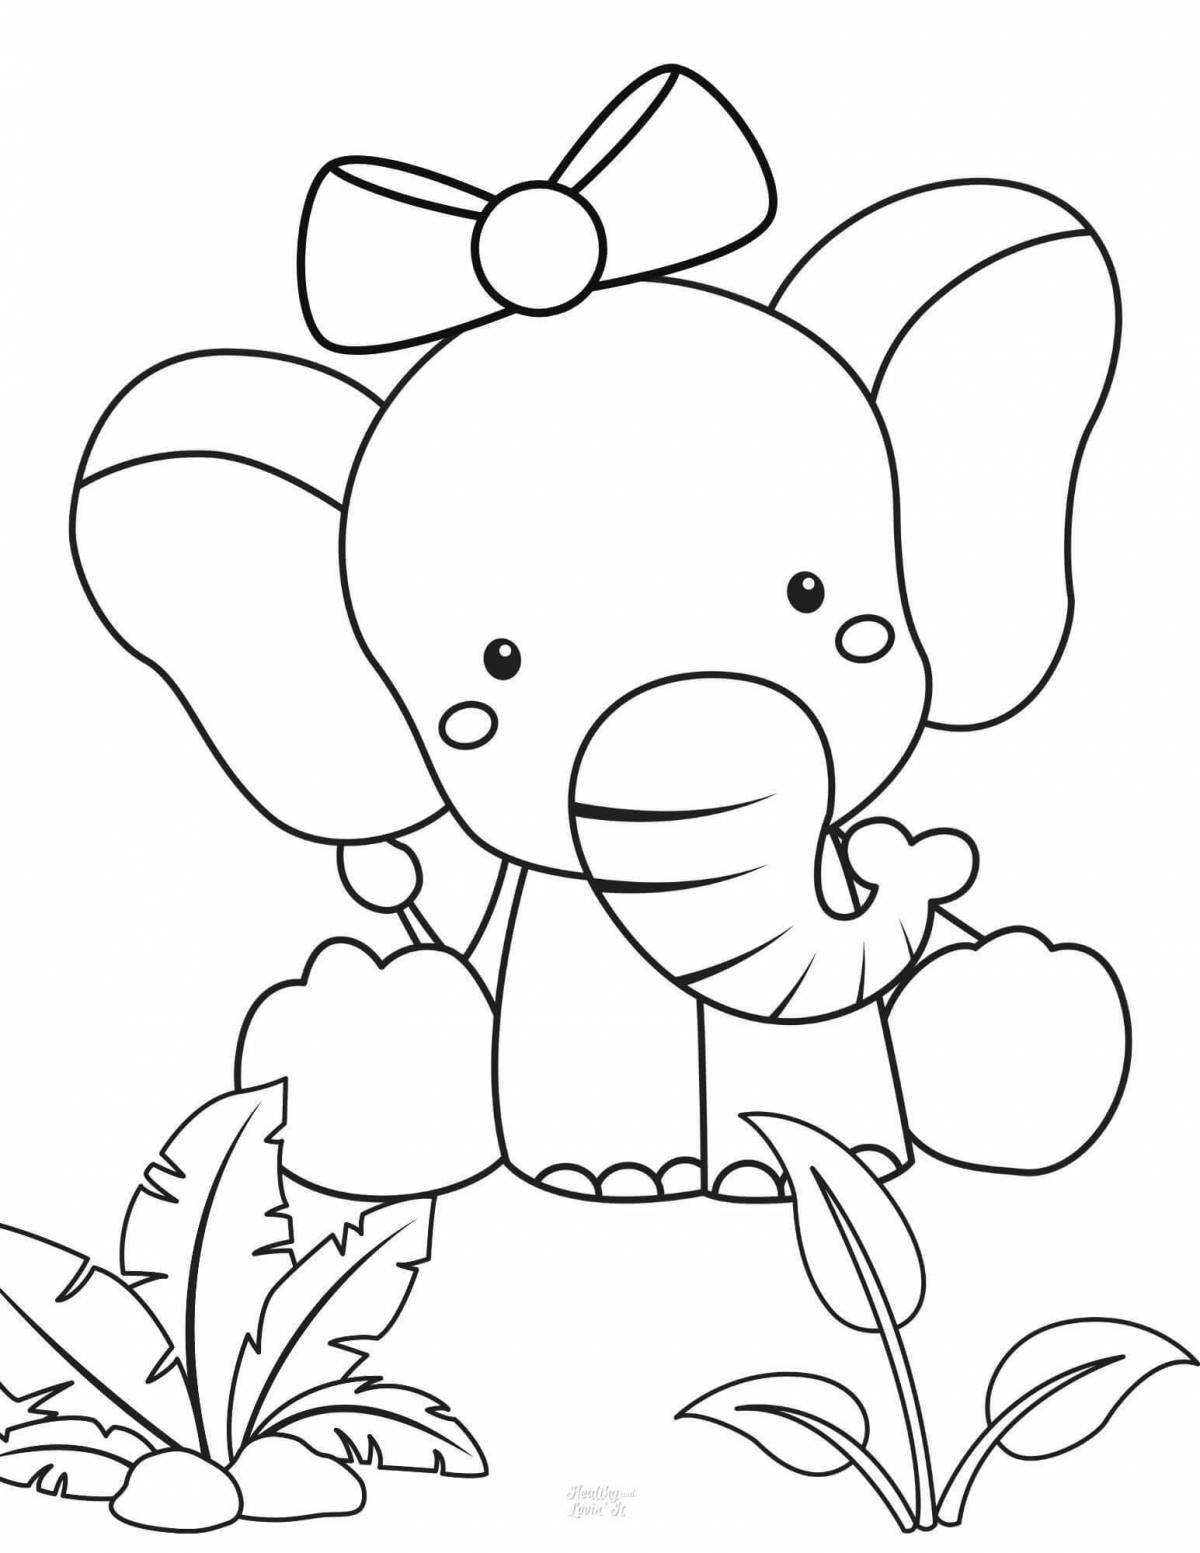 Удивительная раскраска слона для детей 3-4 лет